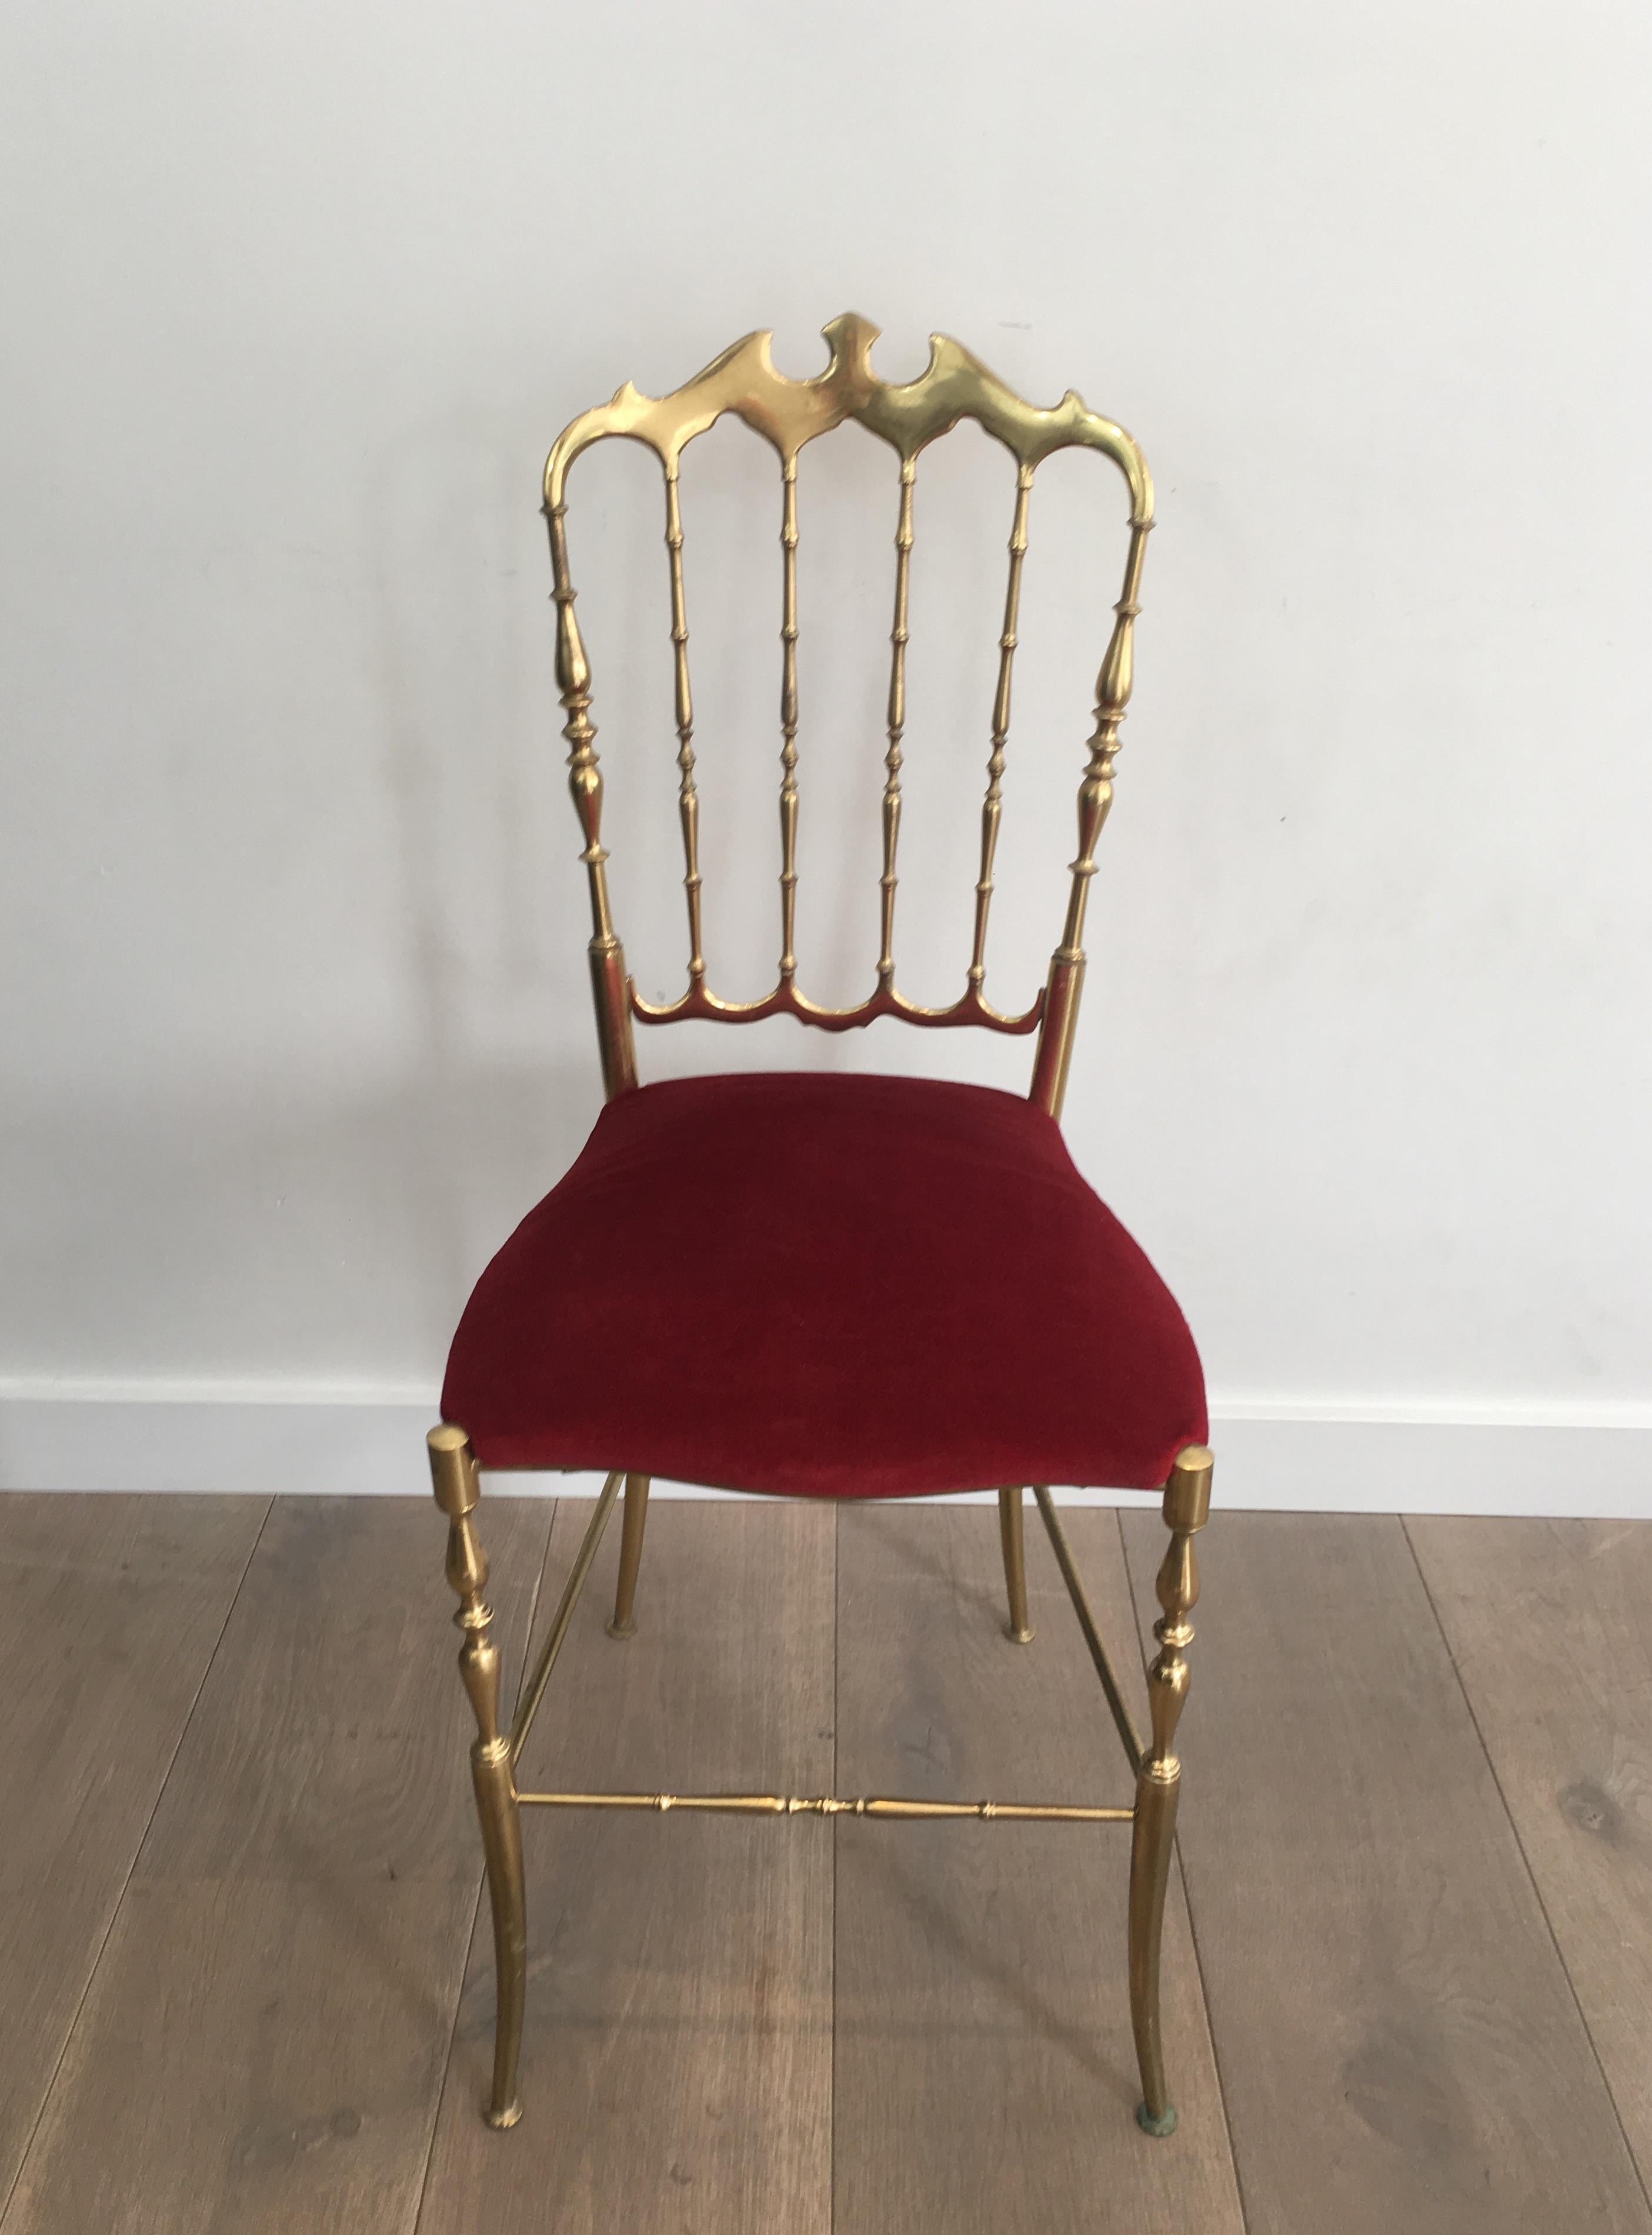 Dieser Chiavari-Stuhl ist ganz aus Messing und mit rotem Samt auf der Sitzfläche. Die Qualität dieses Stuhls ist sehr gut. Es handelt sich um ein französisches Werk aus der Zeit um 1940.